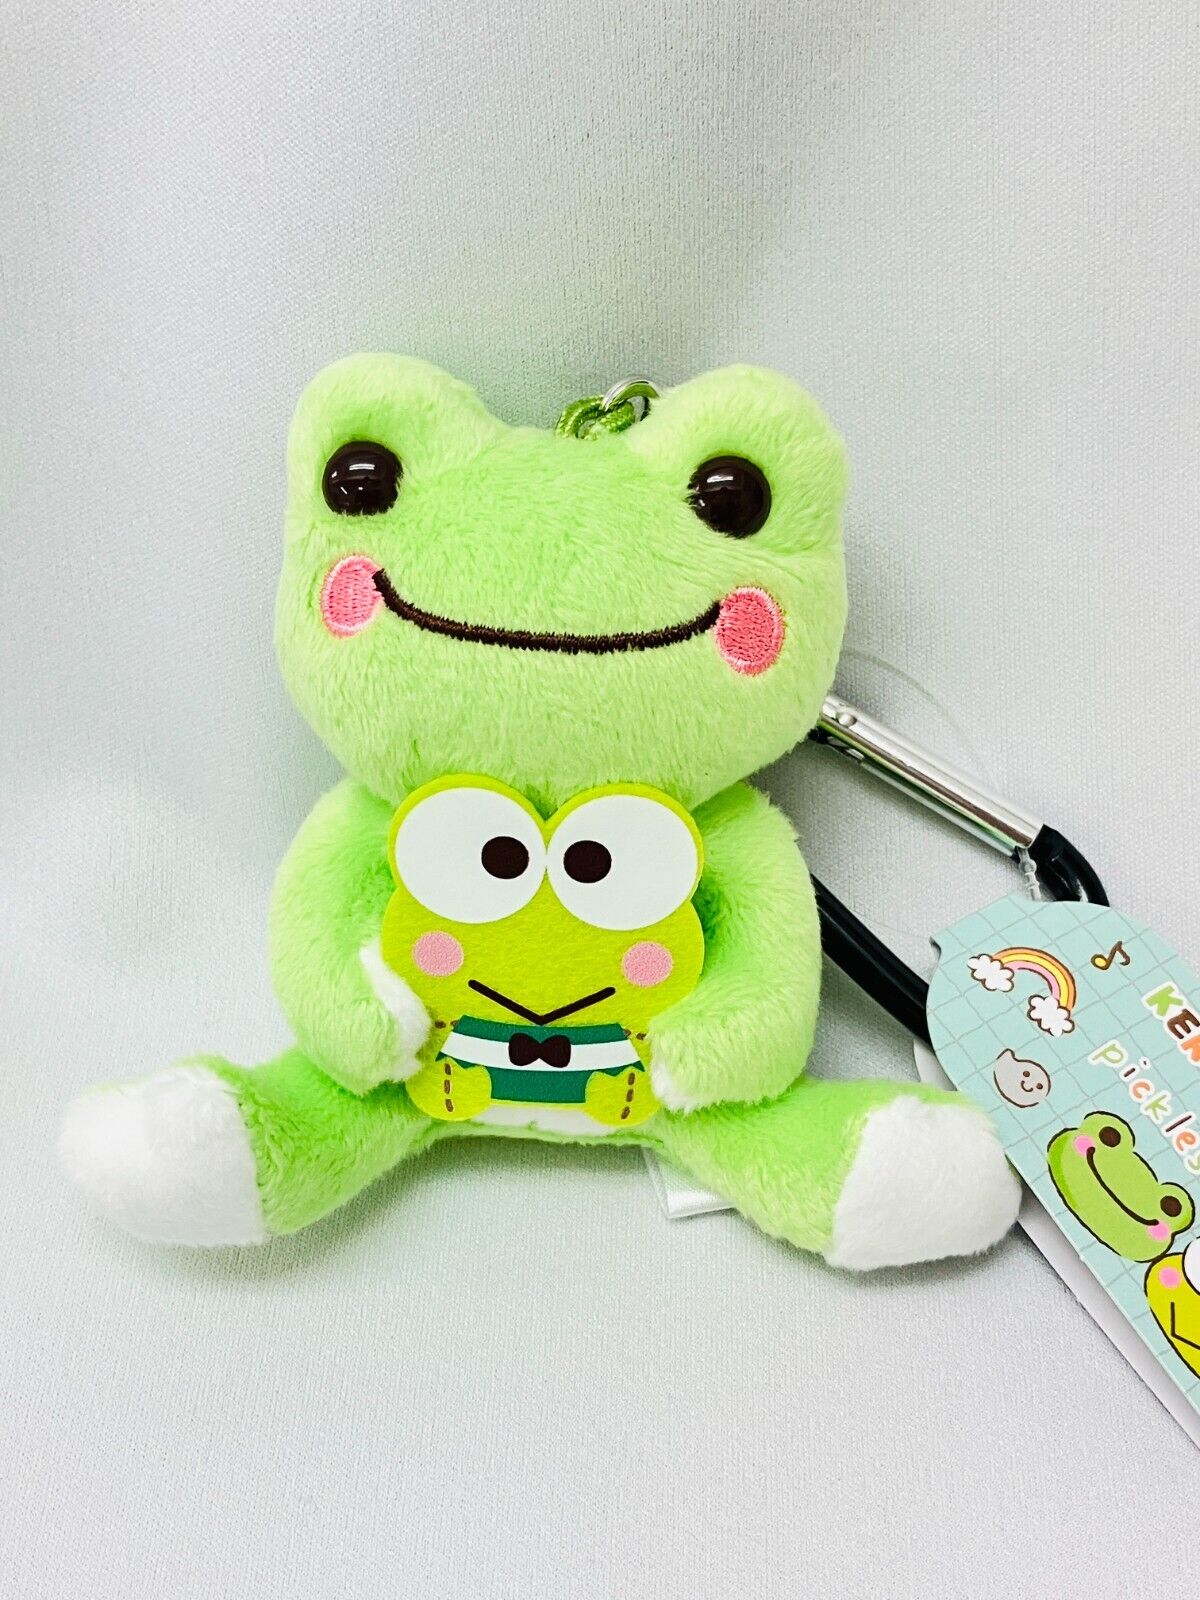 Pickles the Frog x Sanrio Kero Kero Keroppi Carabiner Mascot Plush New Japan